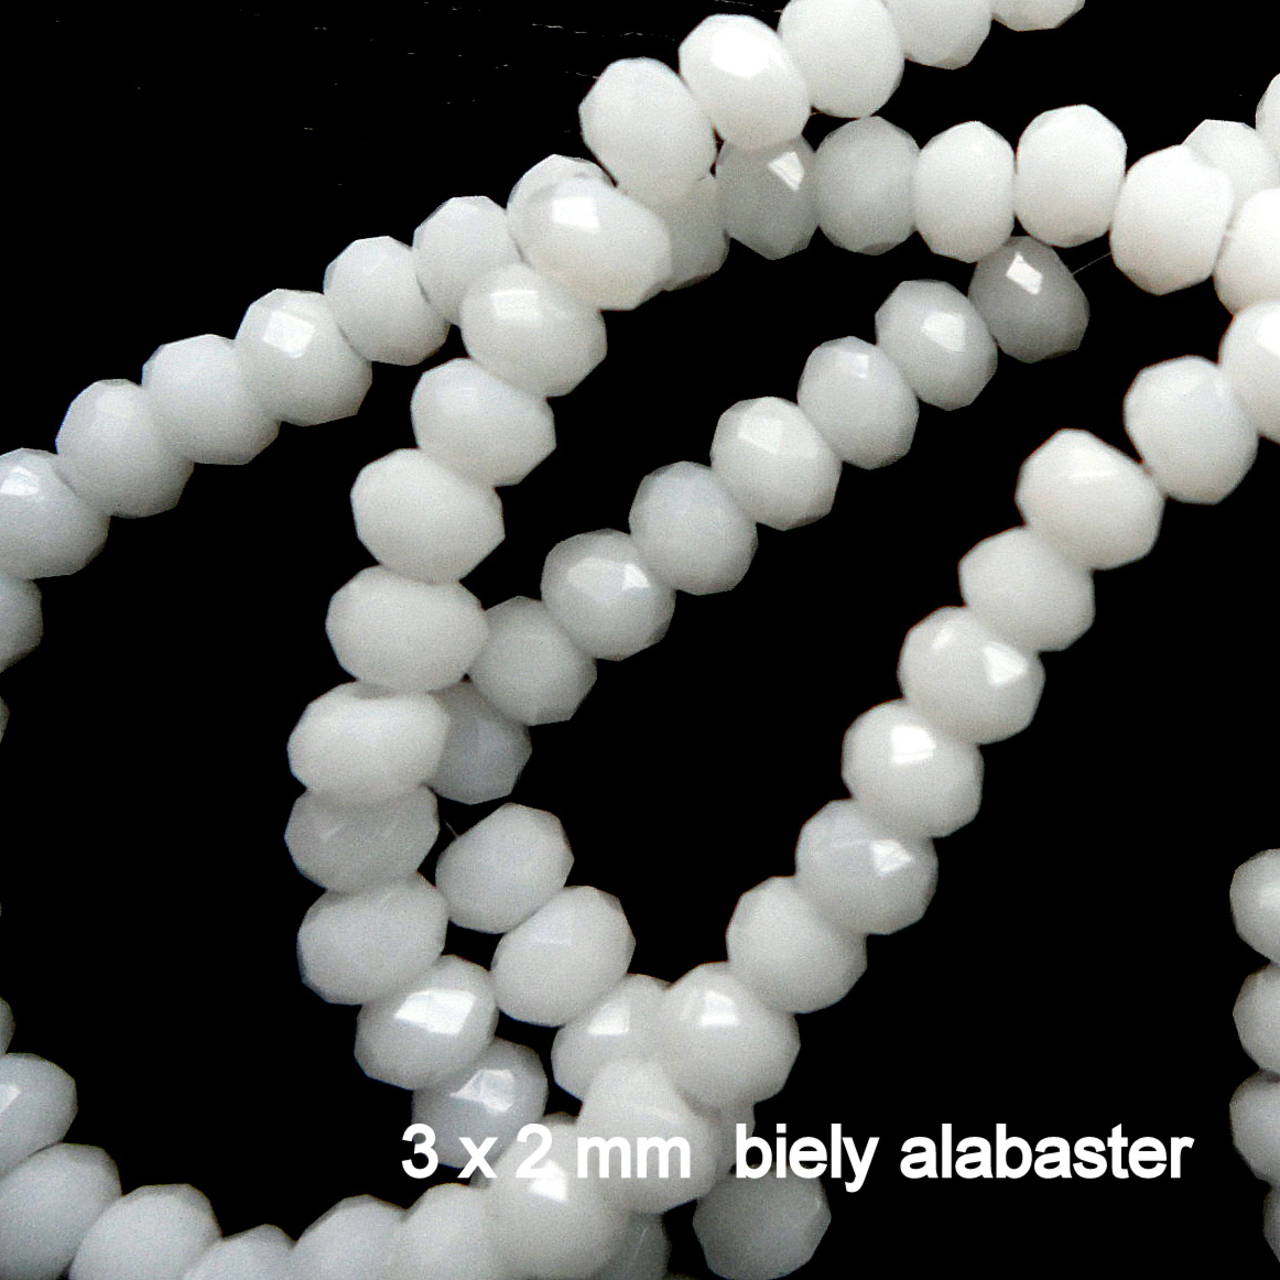 Sklenená rondelka 3x2mm-1ks (biely alabaster)